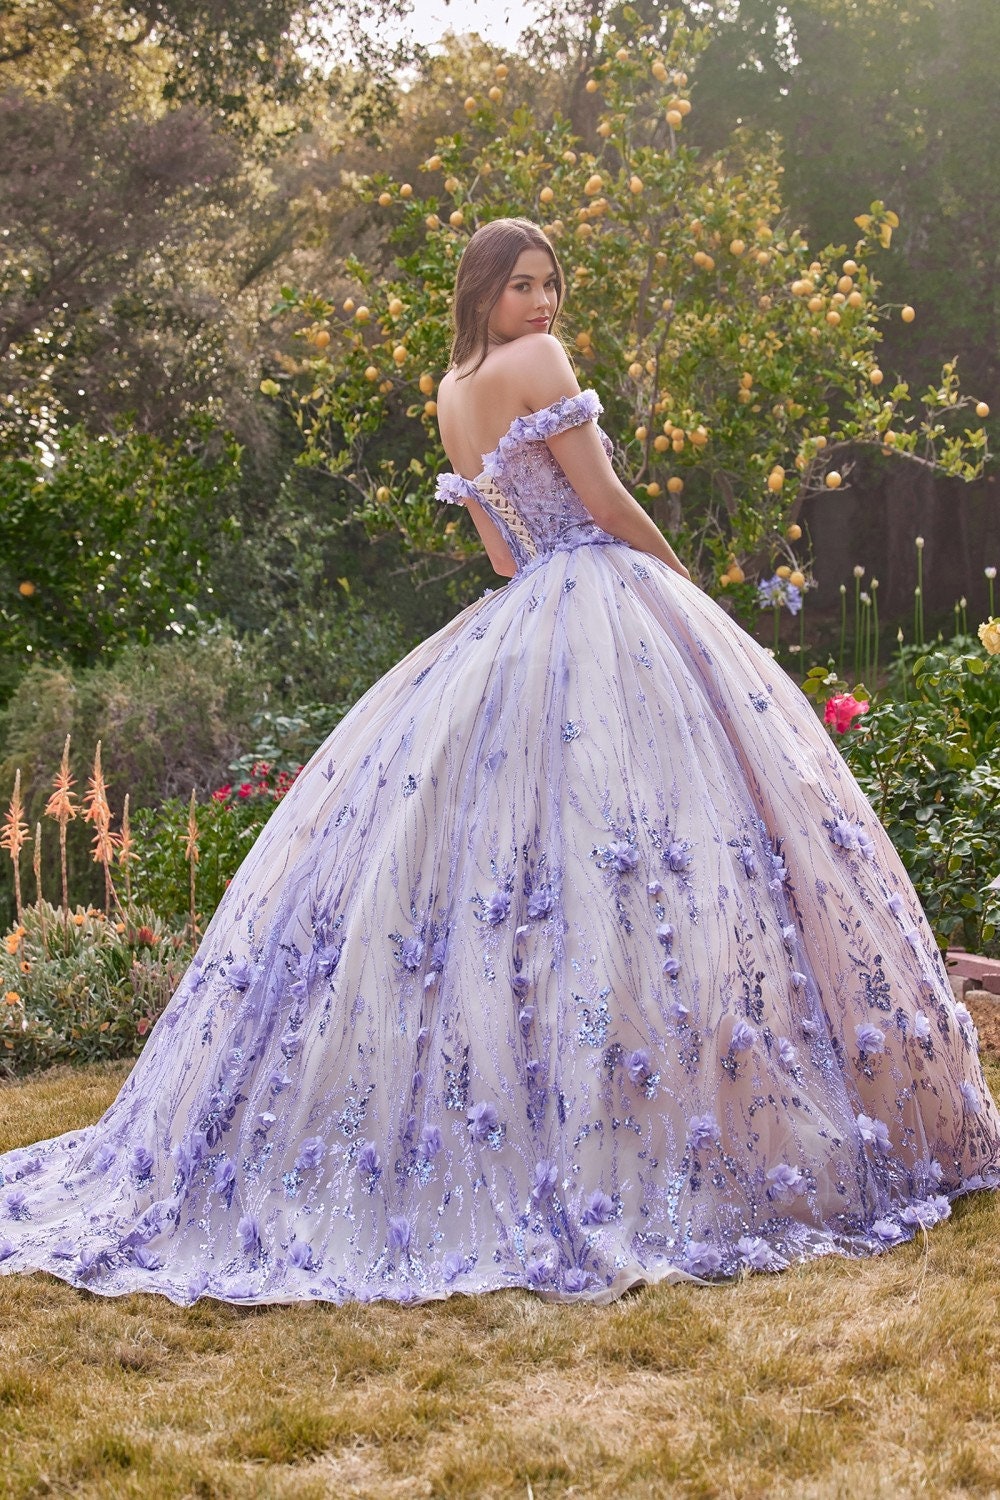 Gorgeous Floral Lace Ball Gown Off The Shoulder Wedding Dress Goth Bride Quince 3D Flowers Black Lavender Sparkle Dress Back Short Train